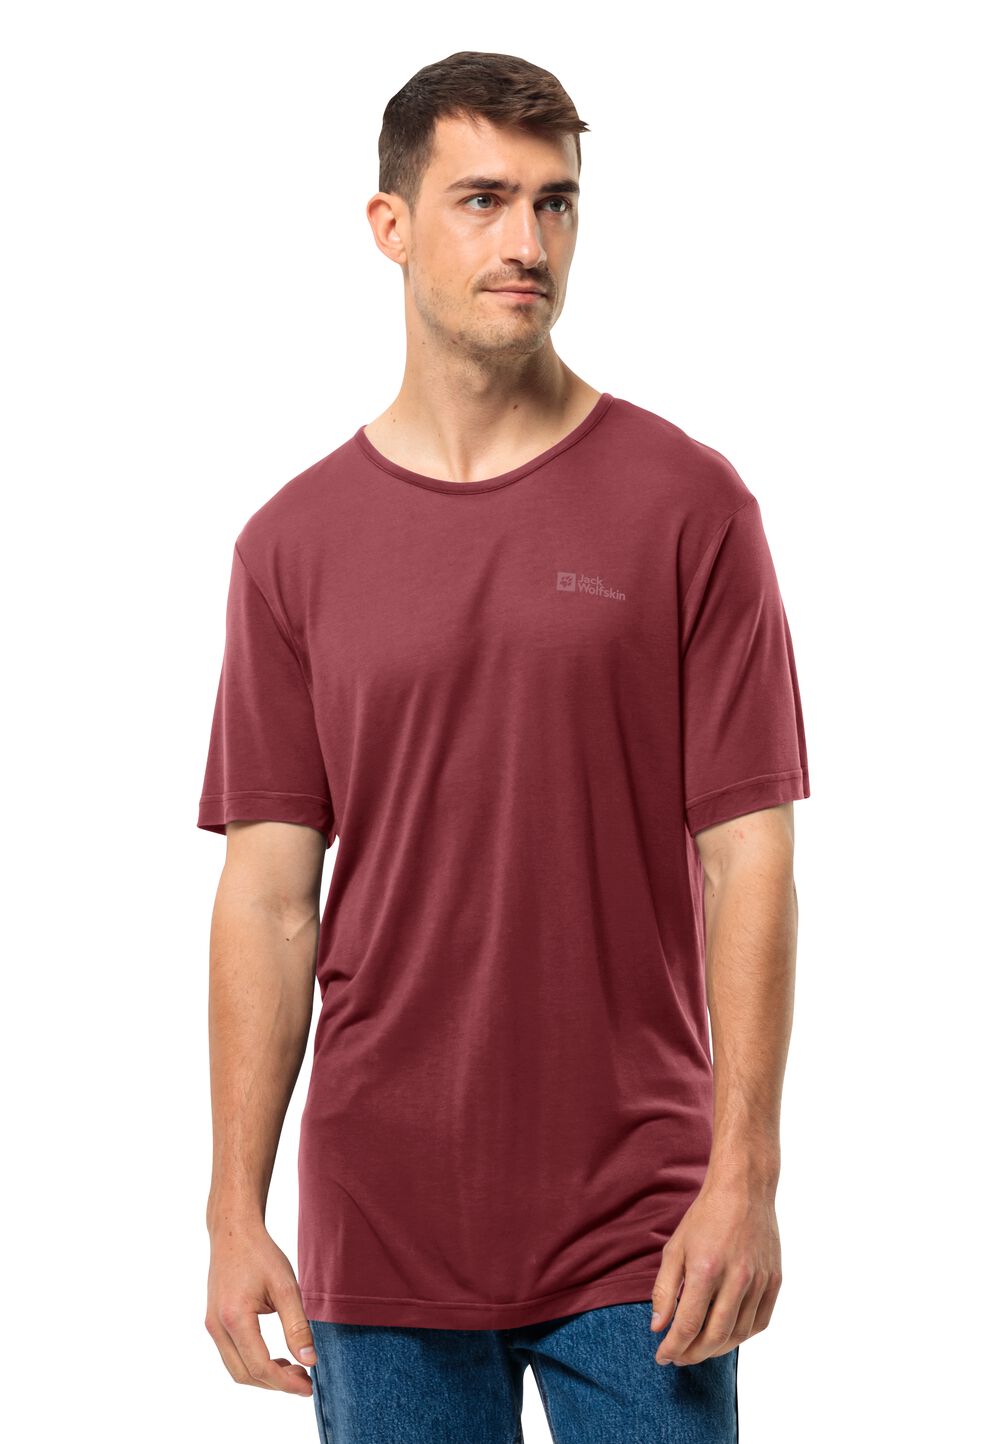 Jack Wolfskin Mola T-Shirt Men Functioneel shirt Heren 3XL purper deep ruby